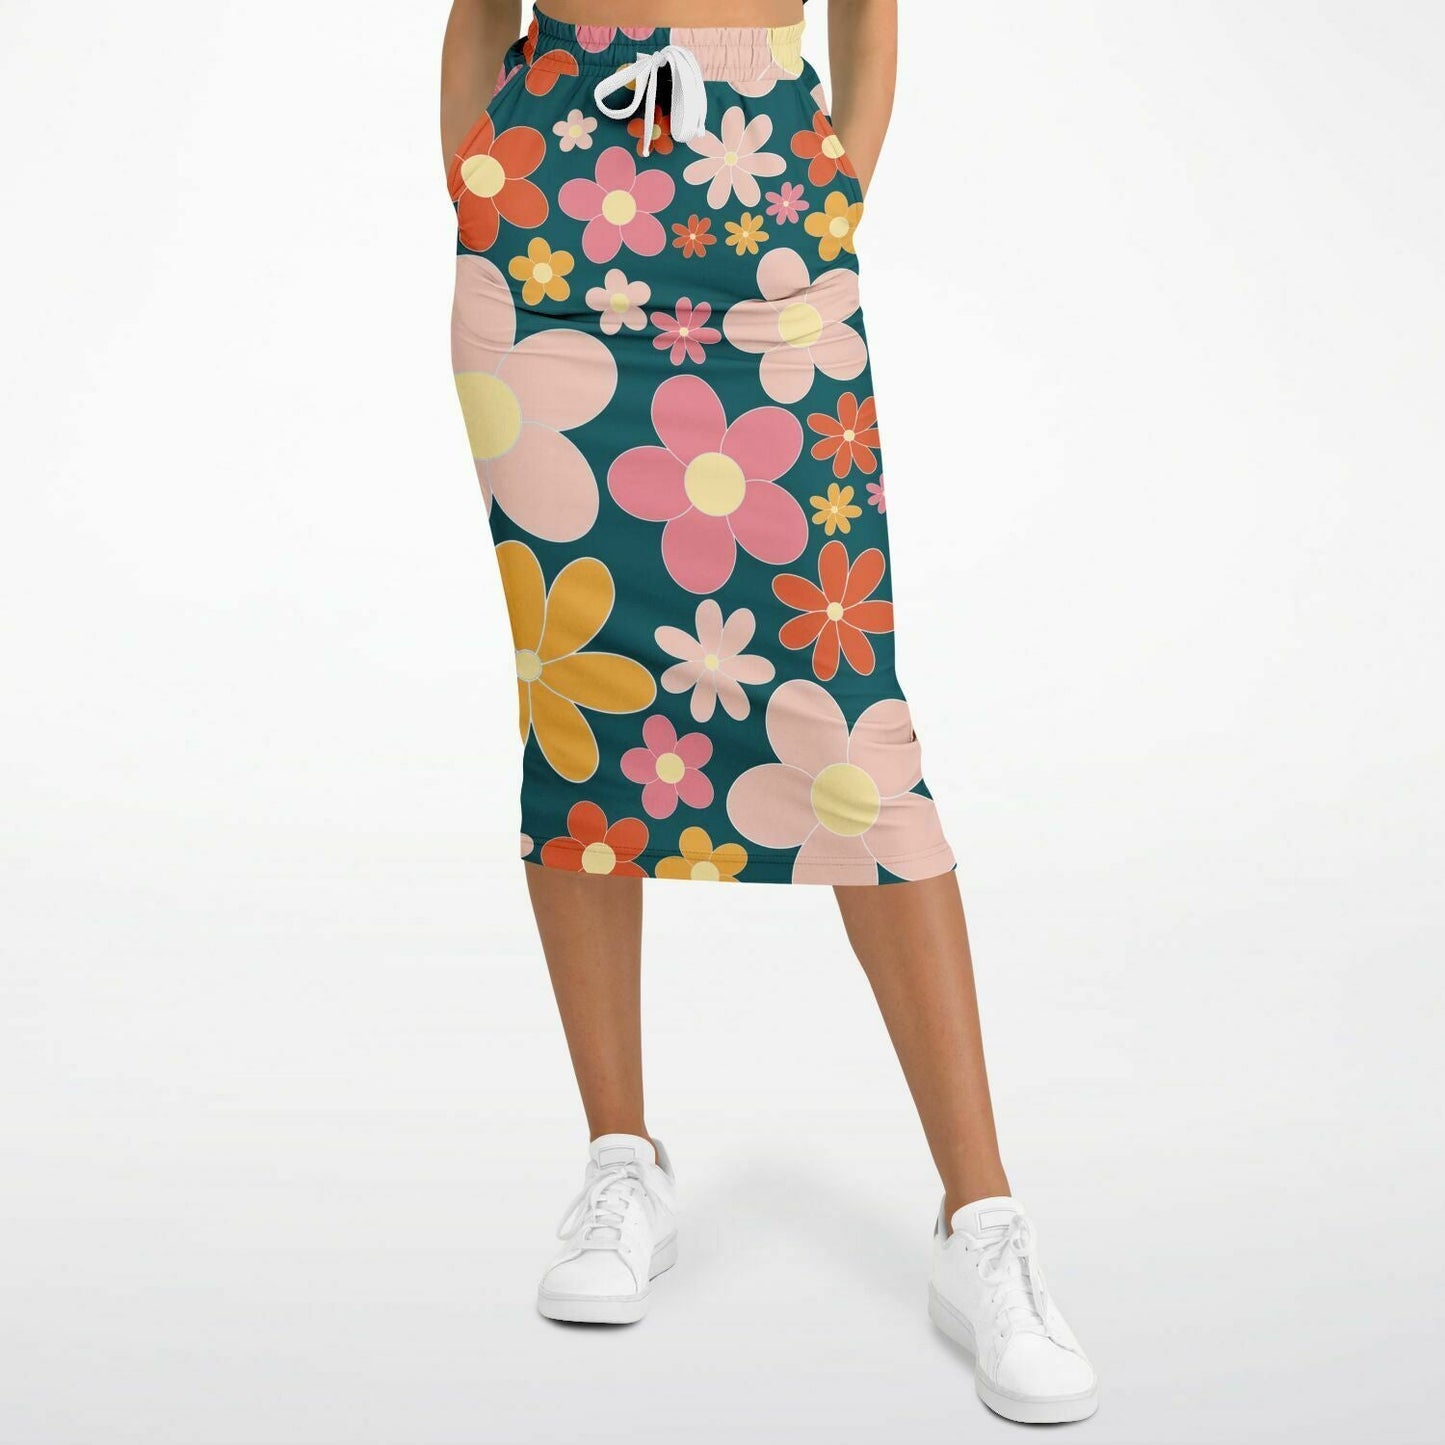 Summer 2 Long Pocket Skirt XL